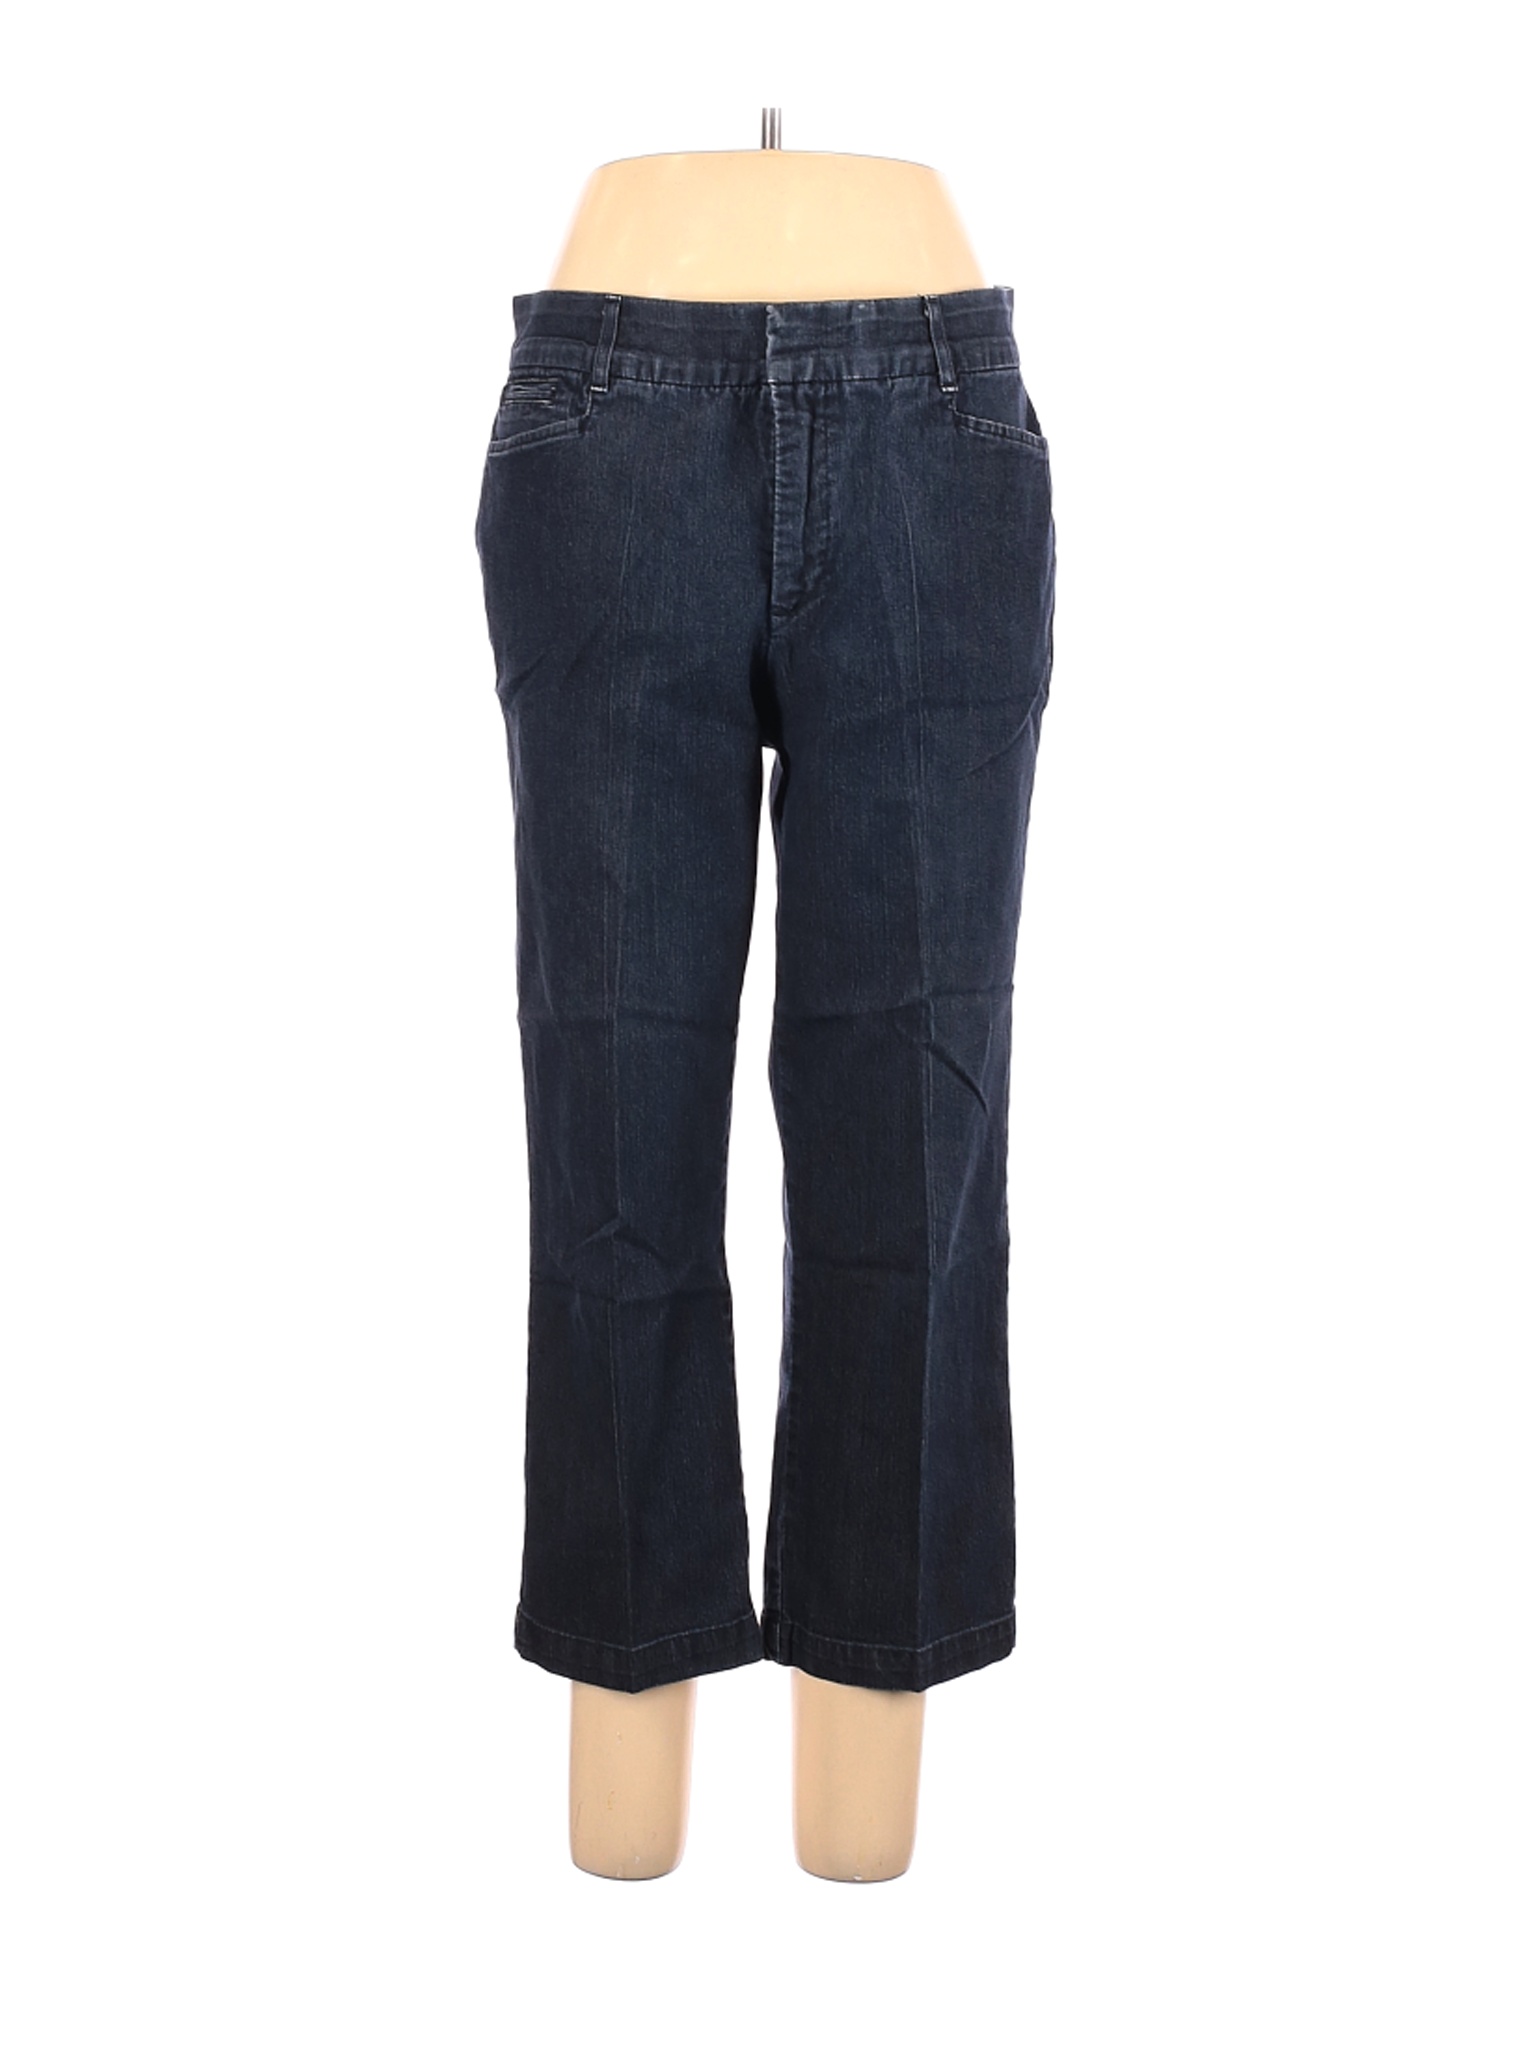 JM Collection Women Blue Jeans 12 | eBay